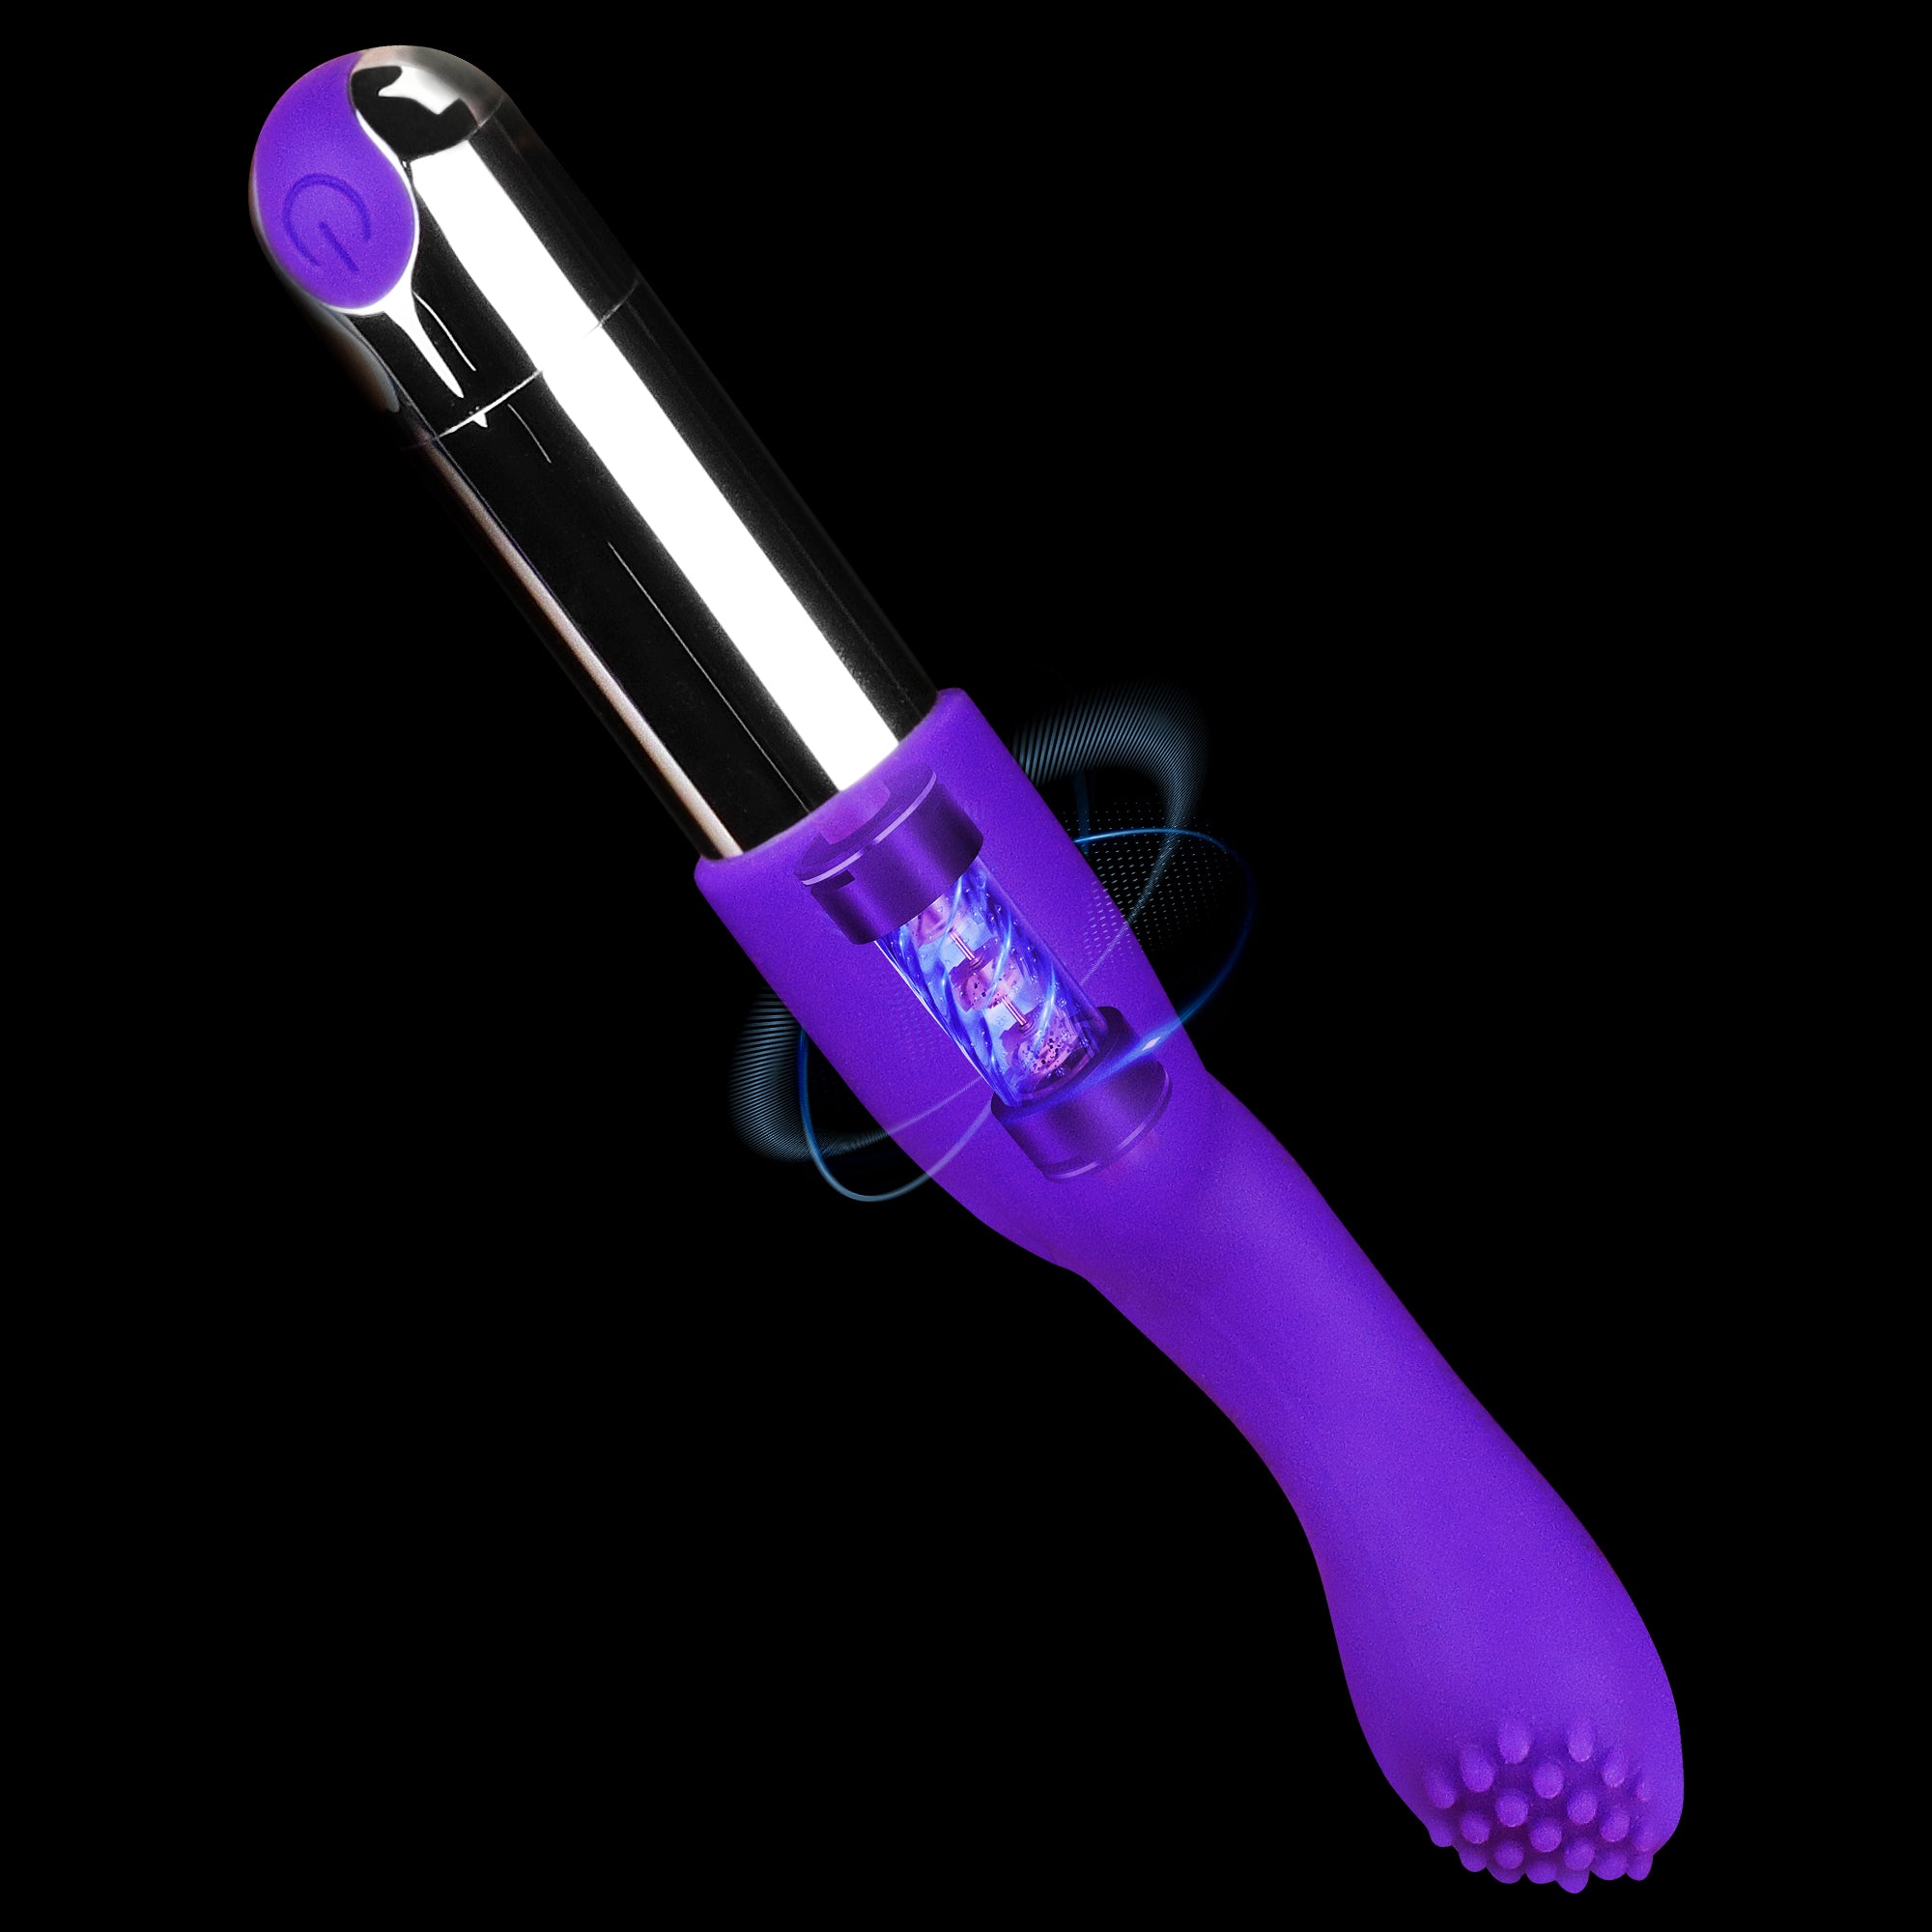 Bullet Vibrator-Finger Vibrator-G-spot Vibrator 3 in 1 Rechargeable Versatile Tickler for Women pleasure